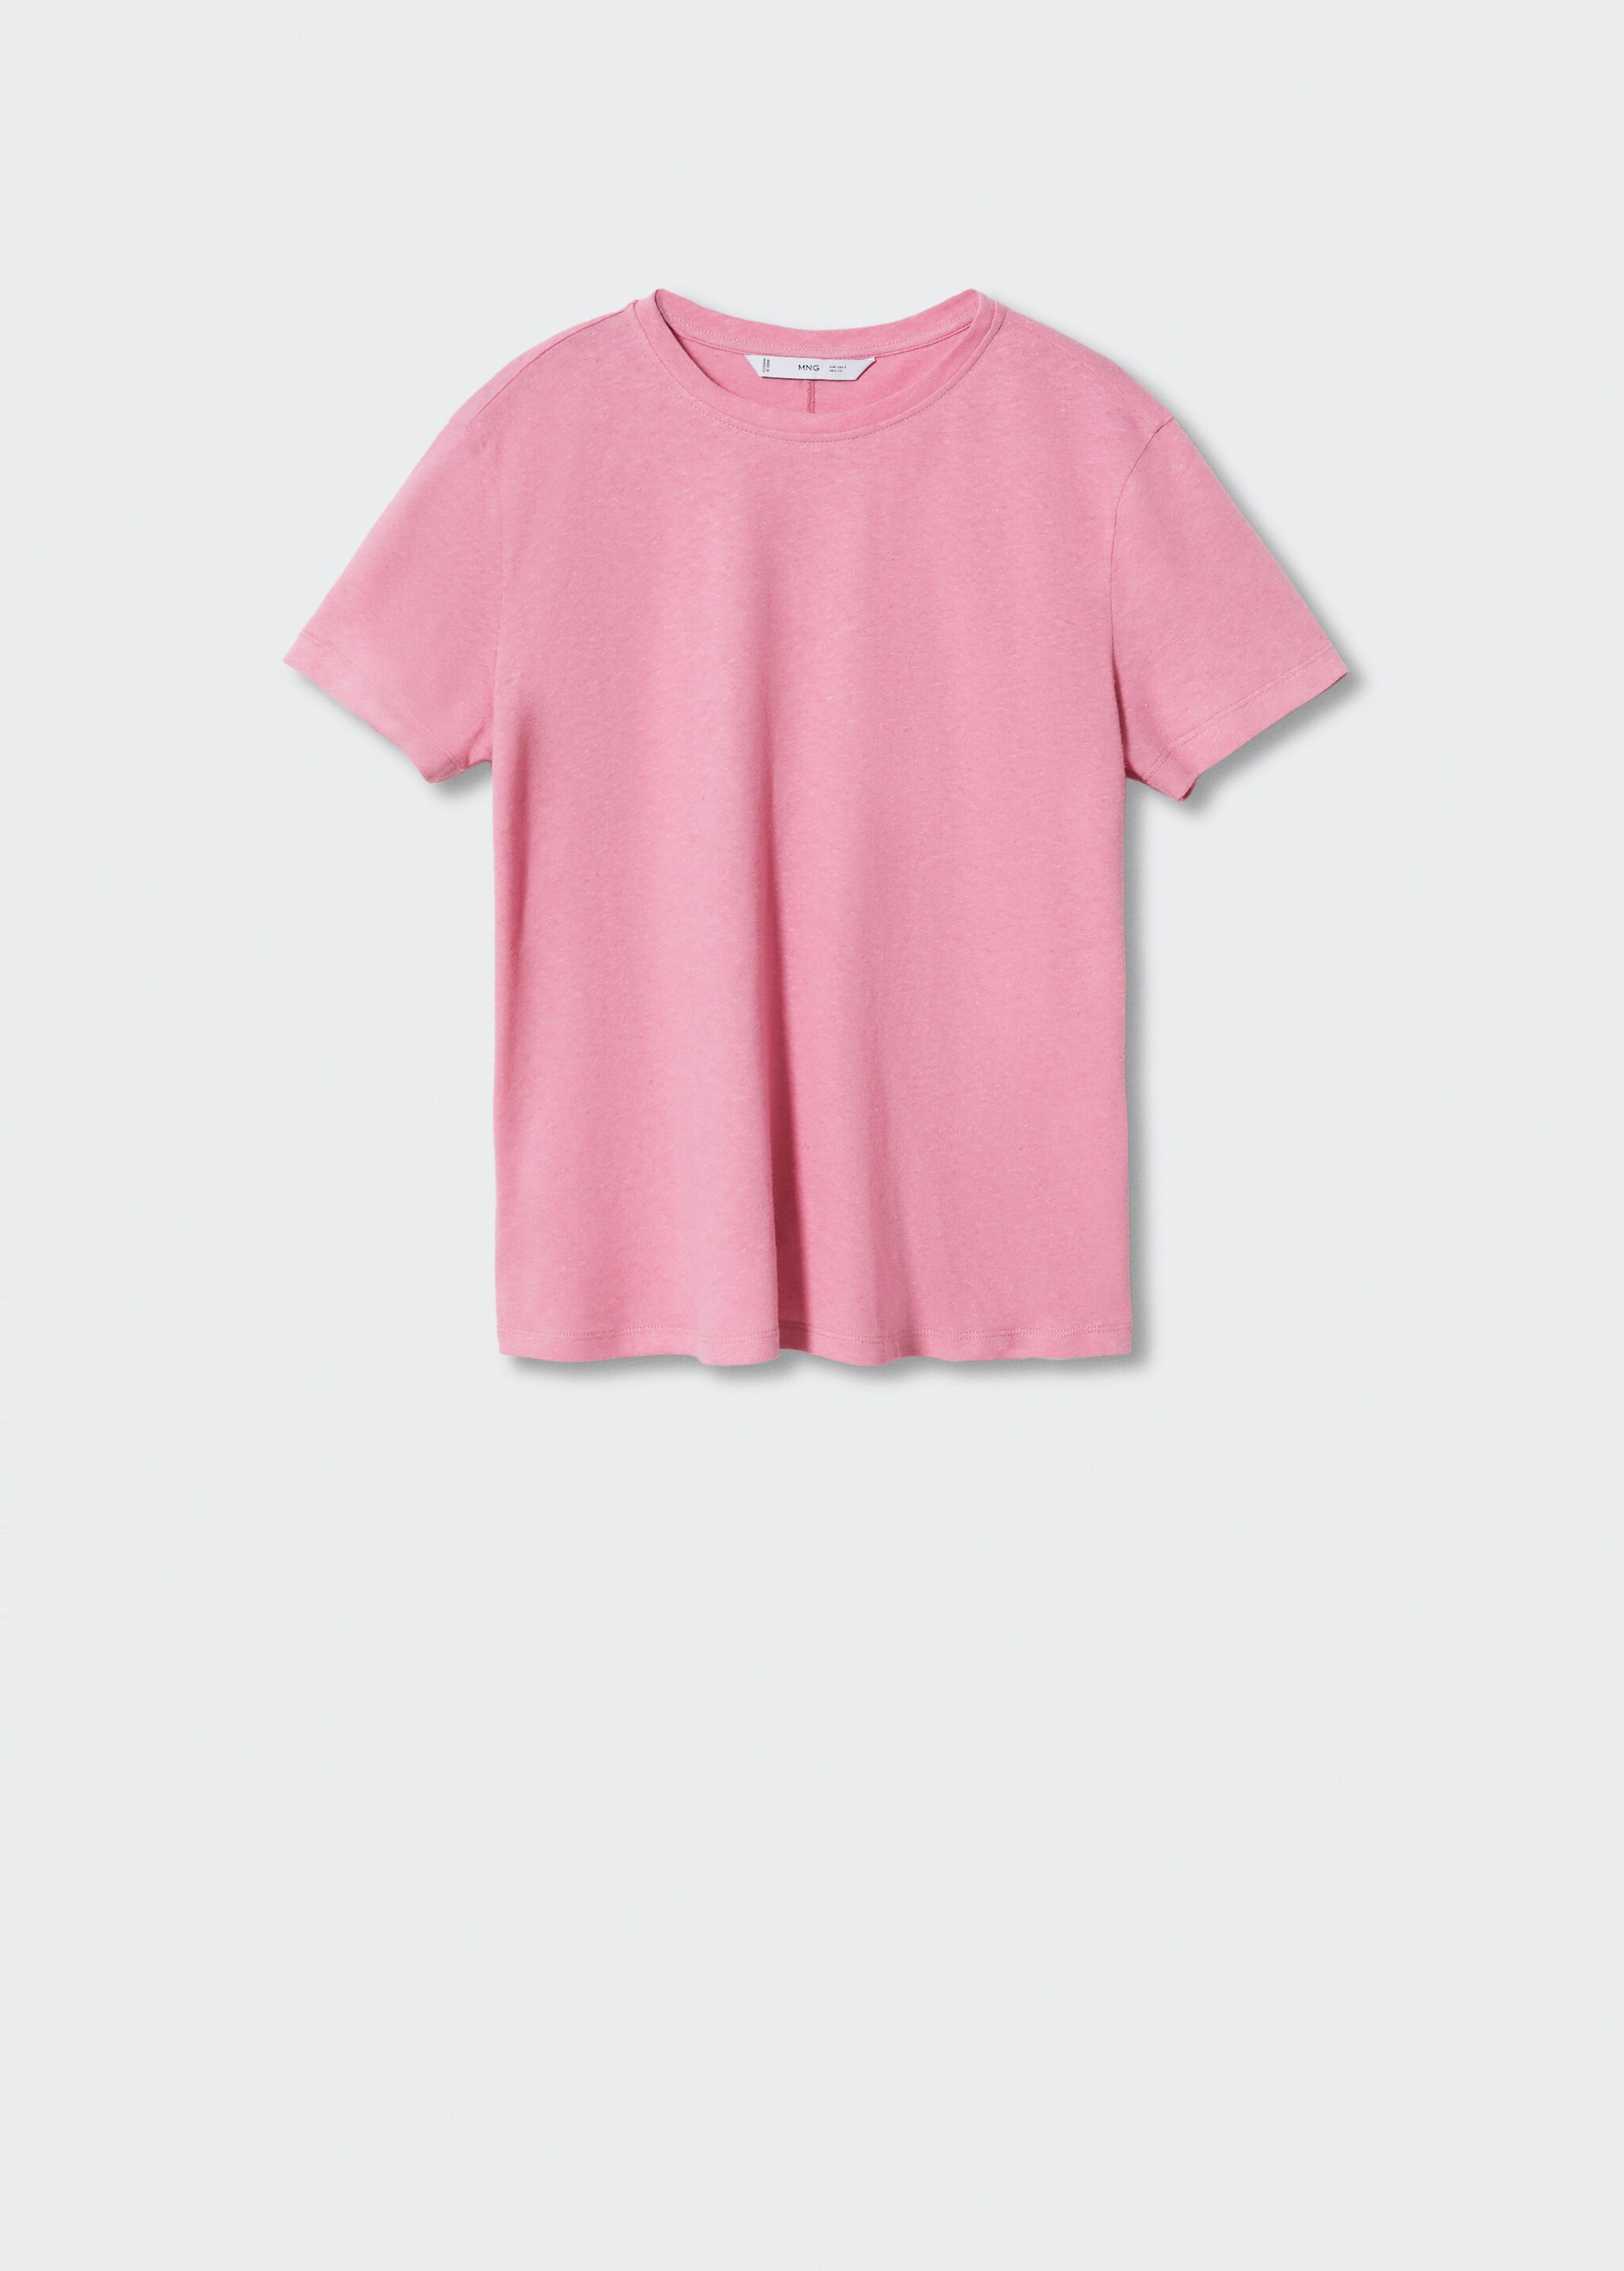 Cotton linen-blend T-shirt - Article without model